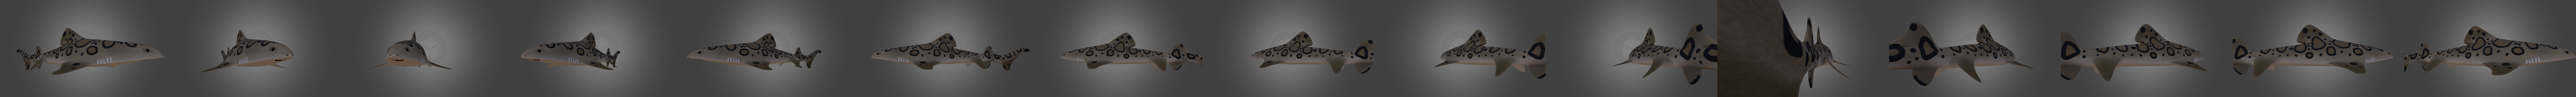 Roblox Blox Fruit Leopard - Download Free 3D model by scrdiaxik